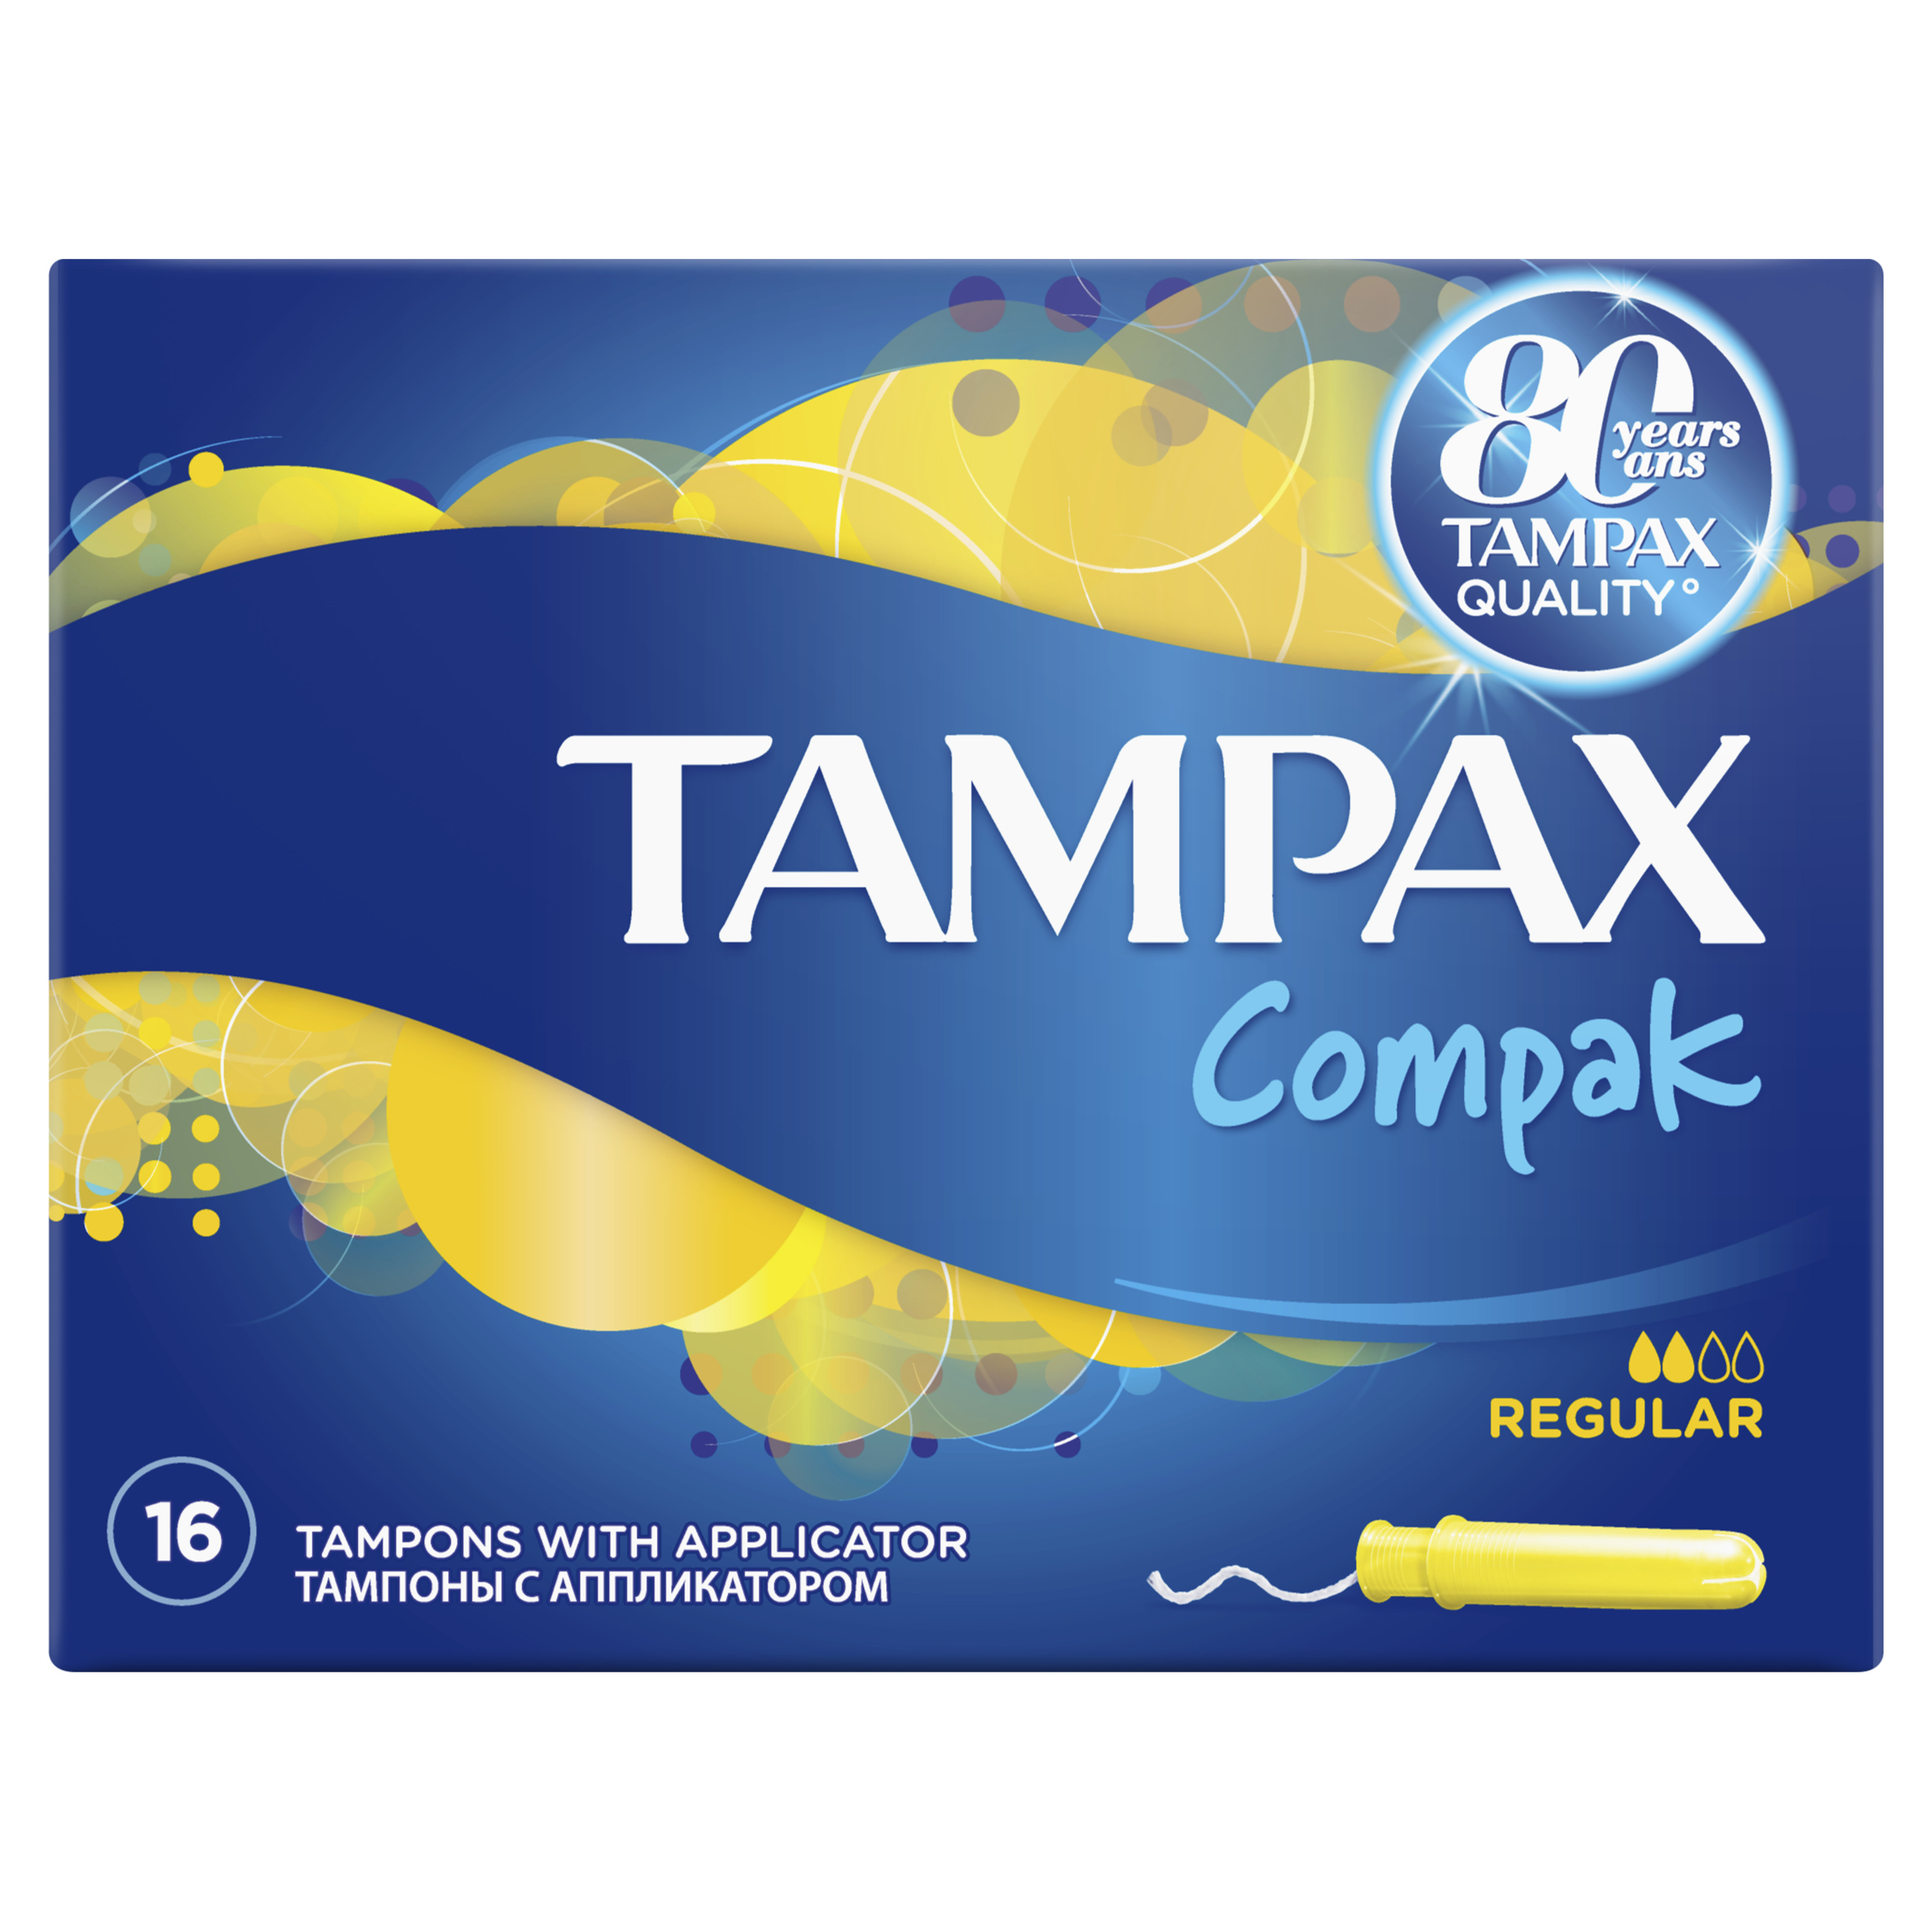 Тампоны Tampax Compak Regular Duo, с аппликатором, 16 шт. - фото 3